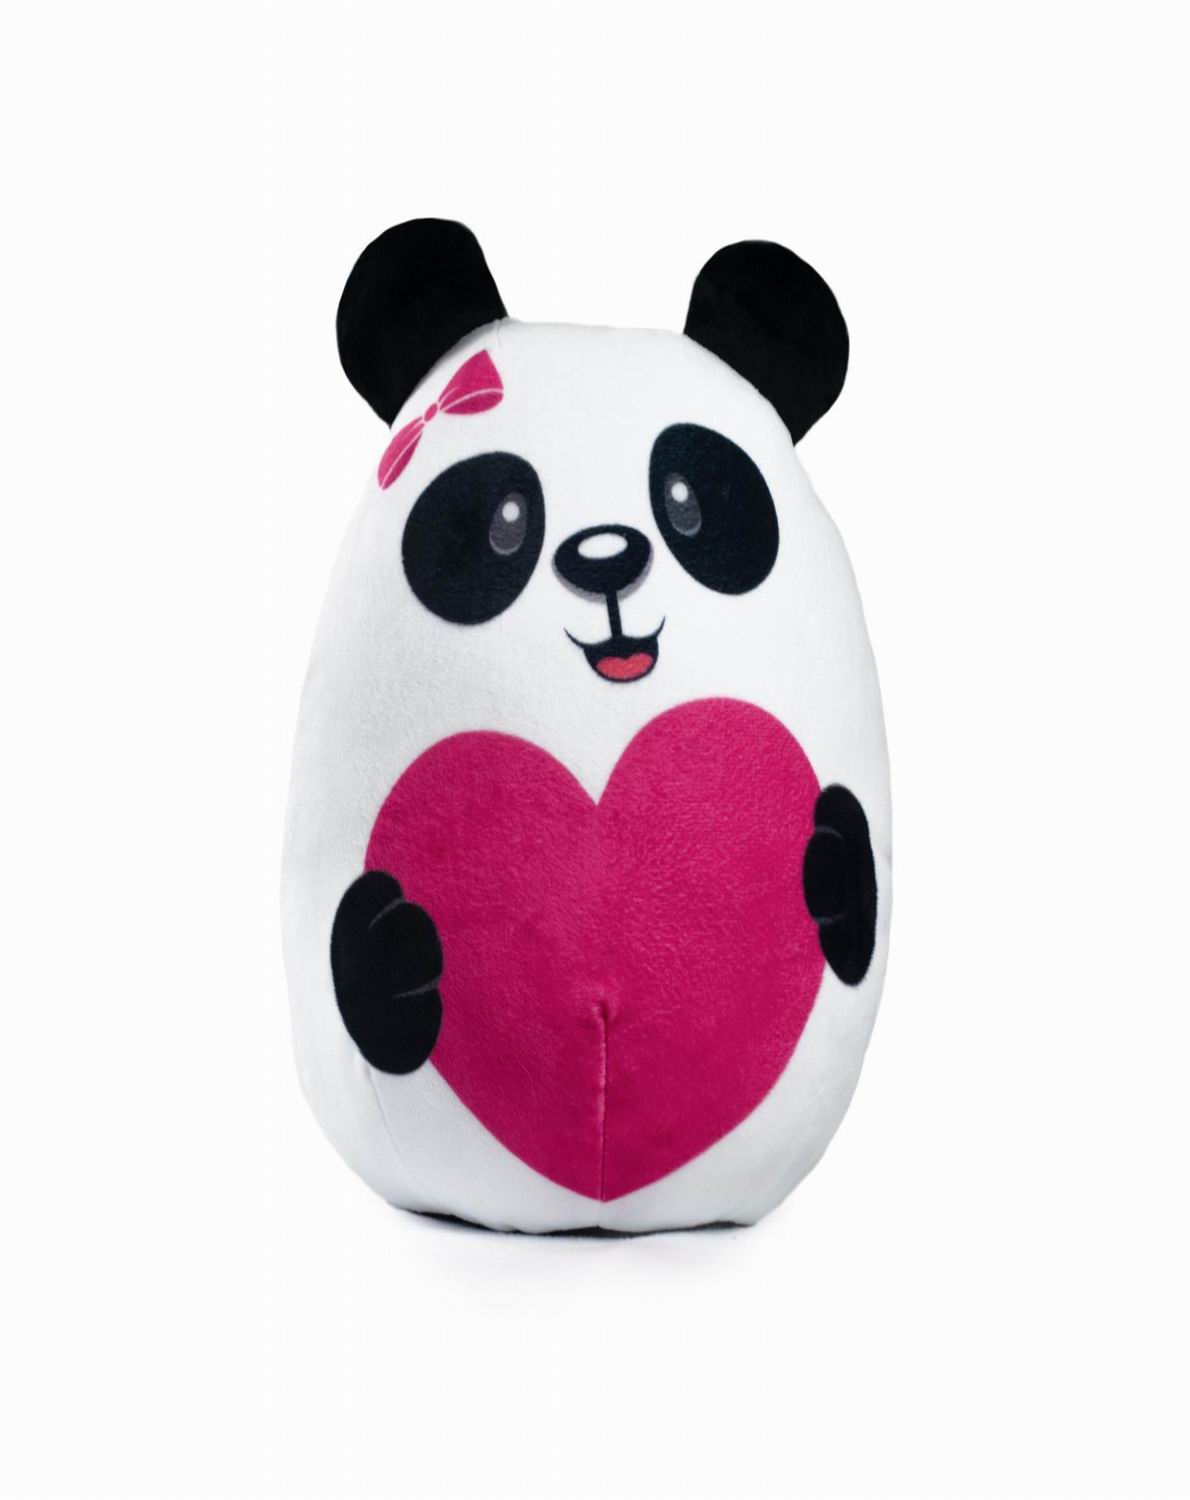 фото Fixsitoysi игрушка-подушка панда 30 см, в пакете